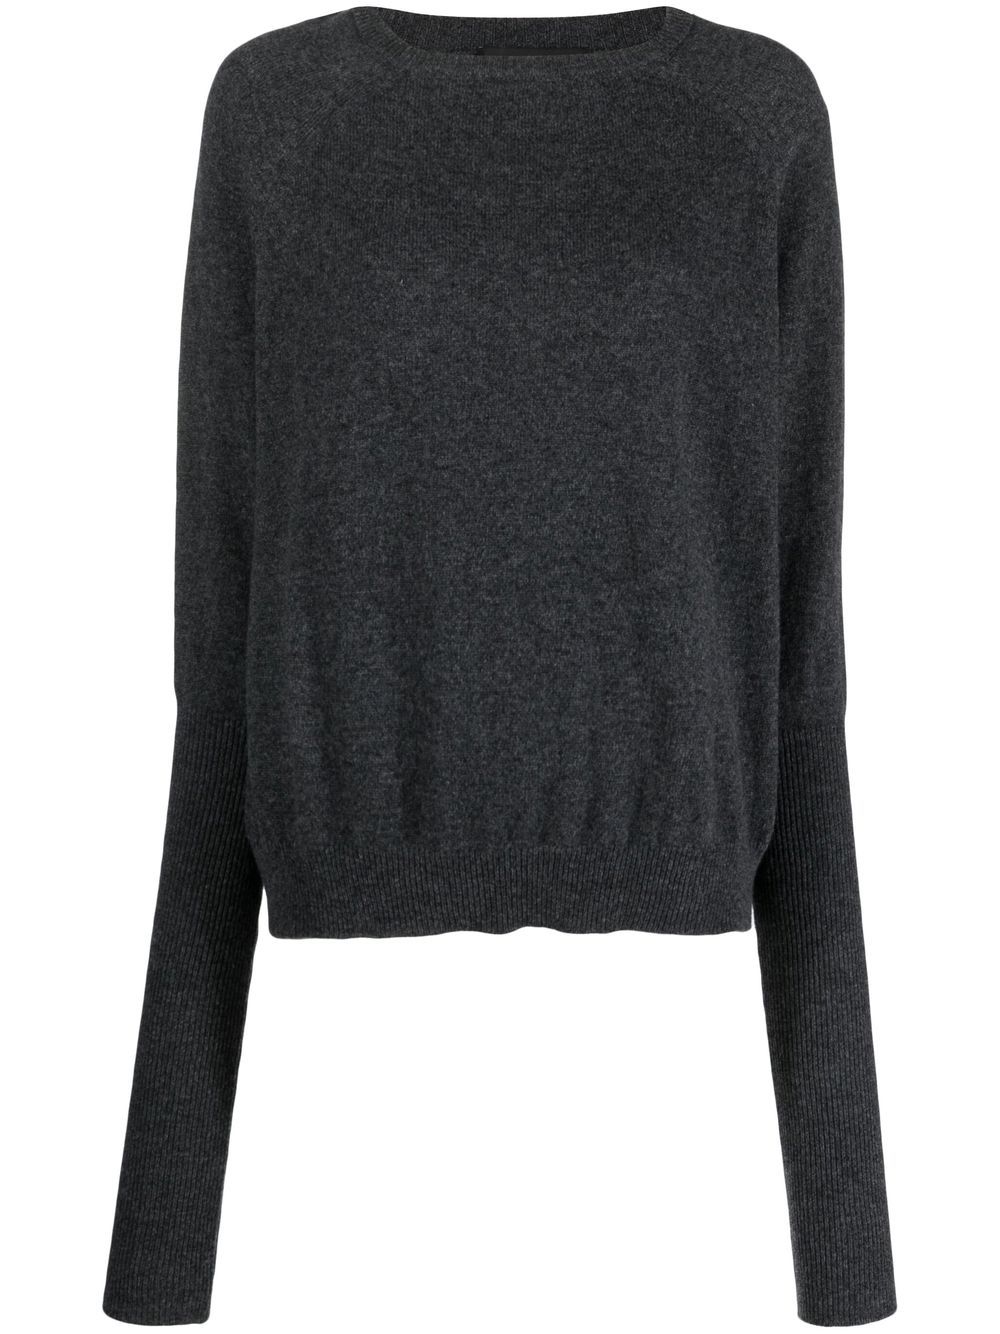 Andrea Ya'aqov fine-knit merino-cashmere jumper